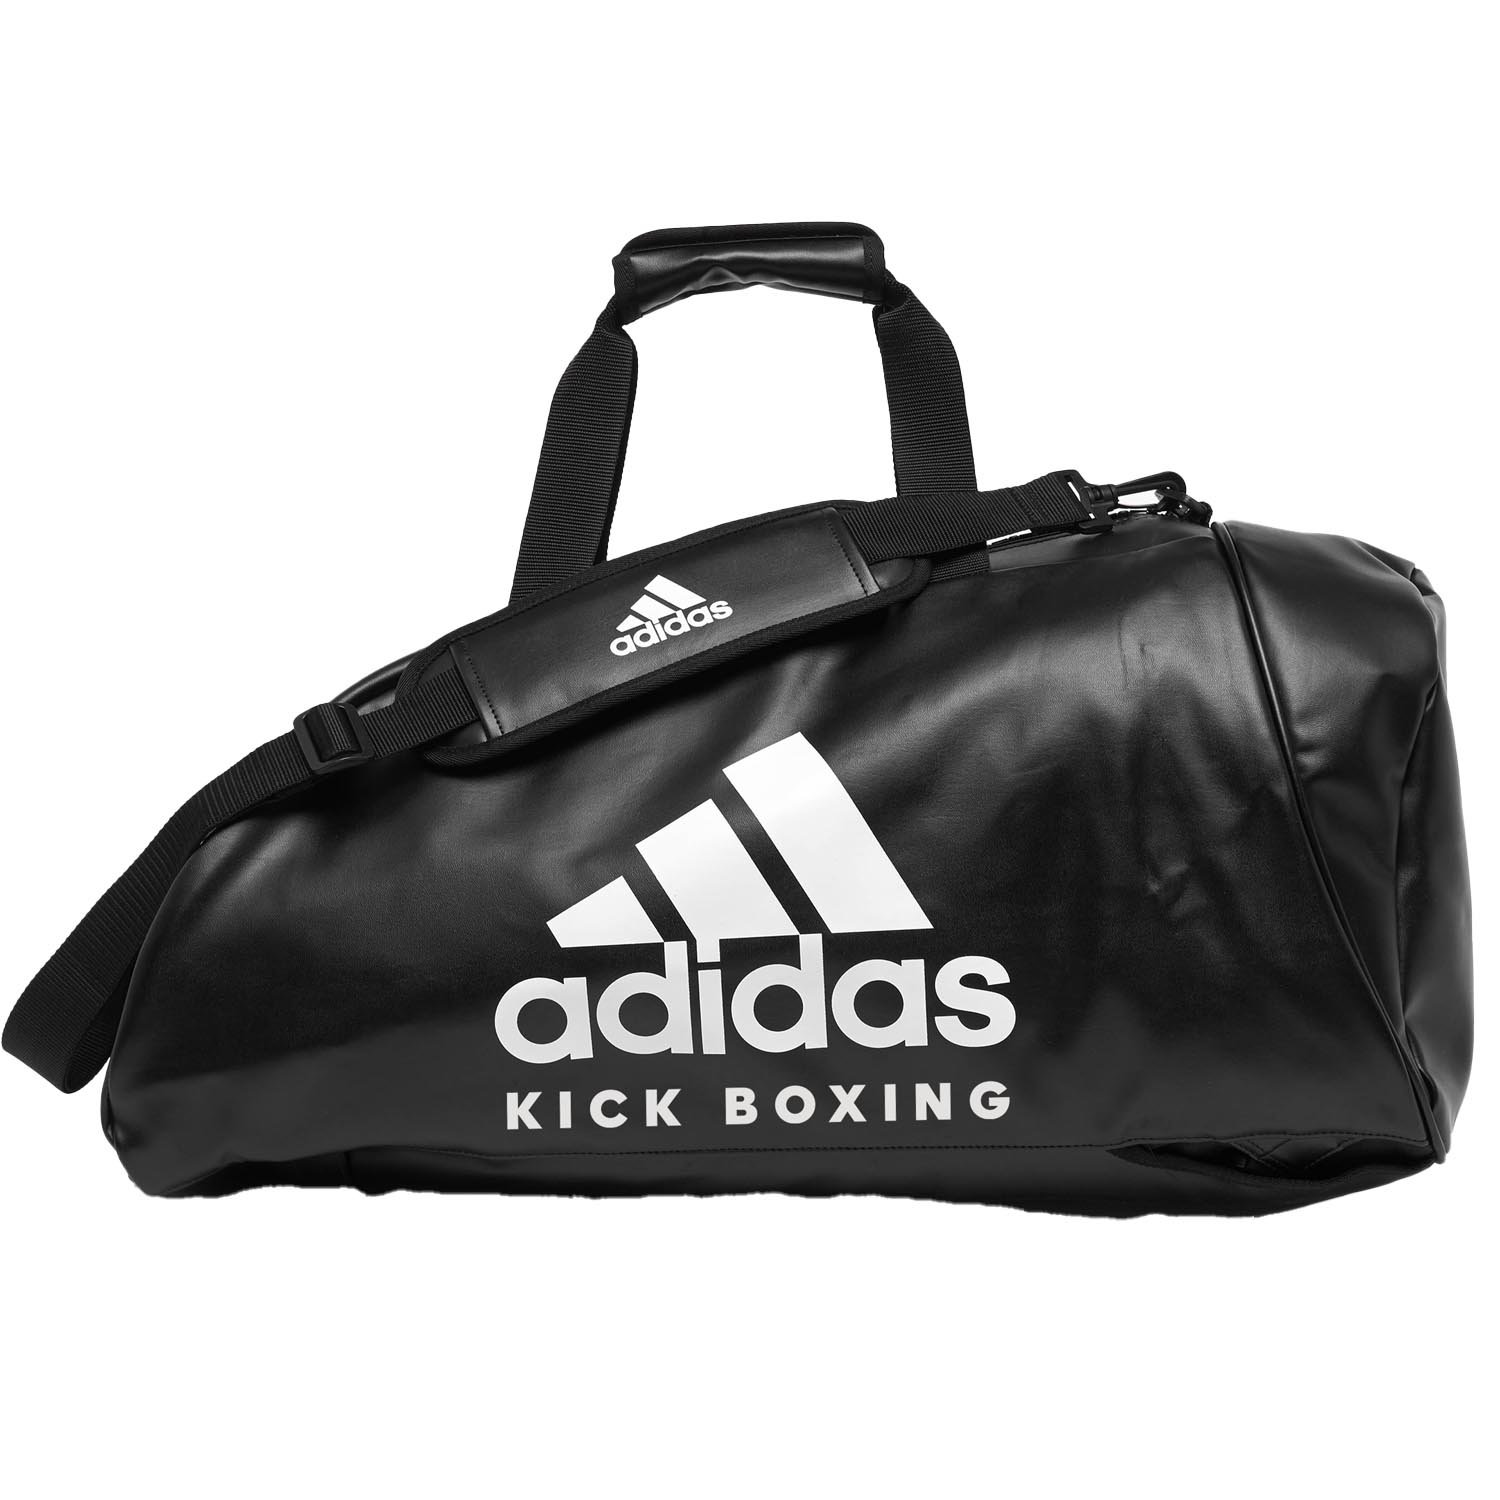 adidas Sporttasche, 2in1 Bag, Kickoxing, PU M, schwarz-weiß